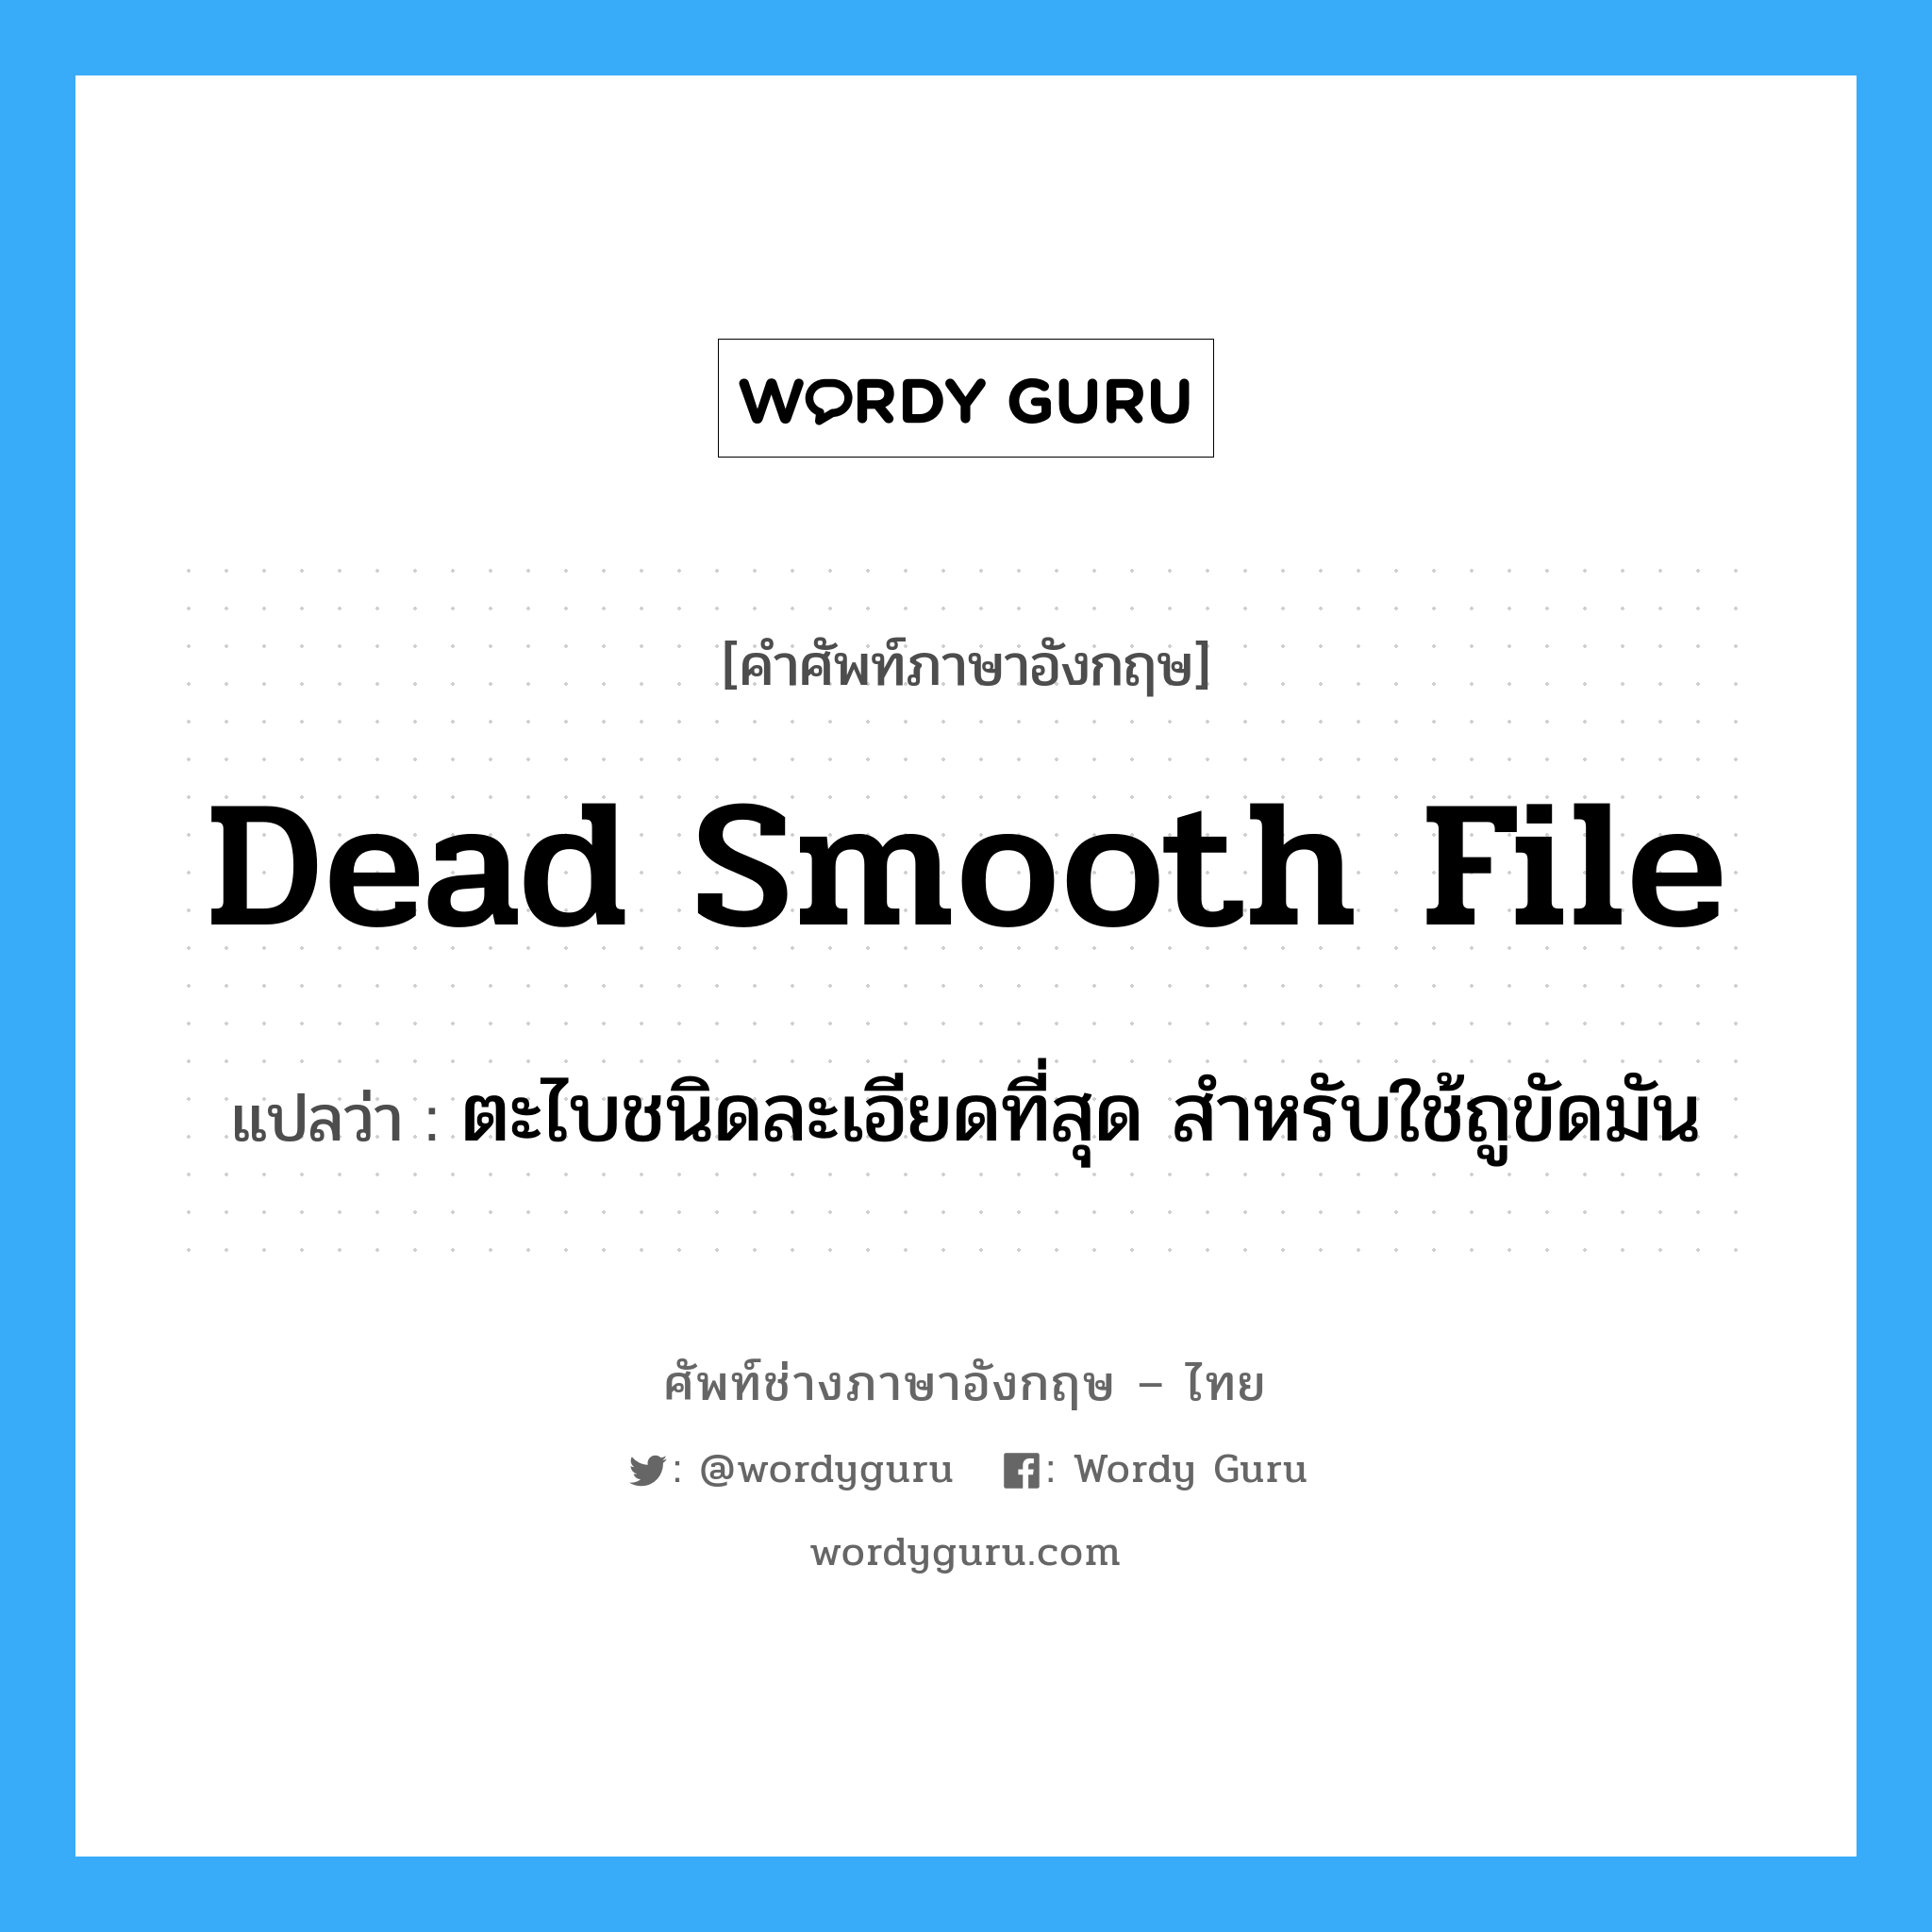 dead-smooth file แปลว่า?, คำศัพท์ช่างภาษาอังกฤษ - ไทย dead smooth file คำศัพท์ภาษาอังกฤษ dead smooth file แปลว่า ตะไบชนิดละเอียดที่สุด สำหรับใช้ถูขัดมัน